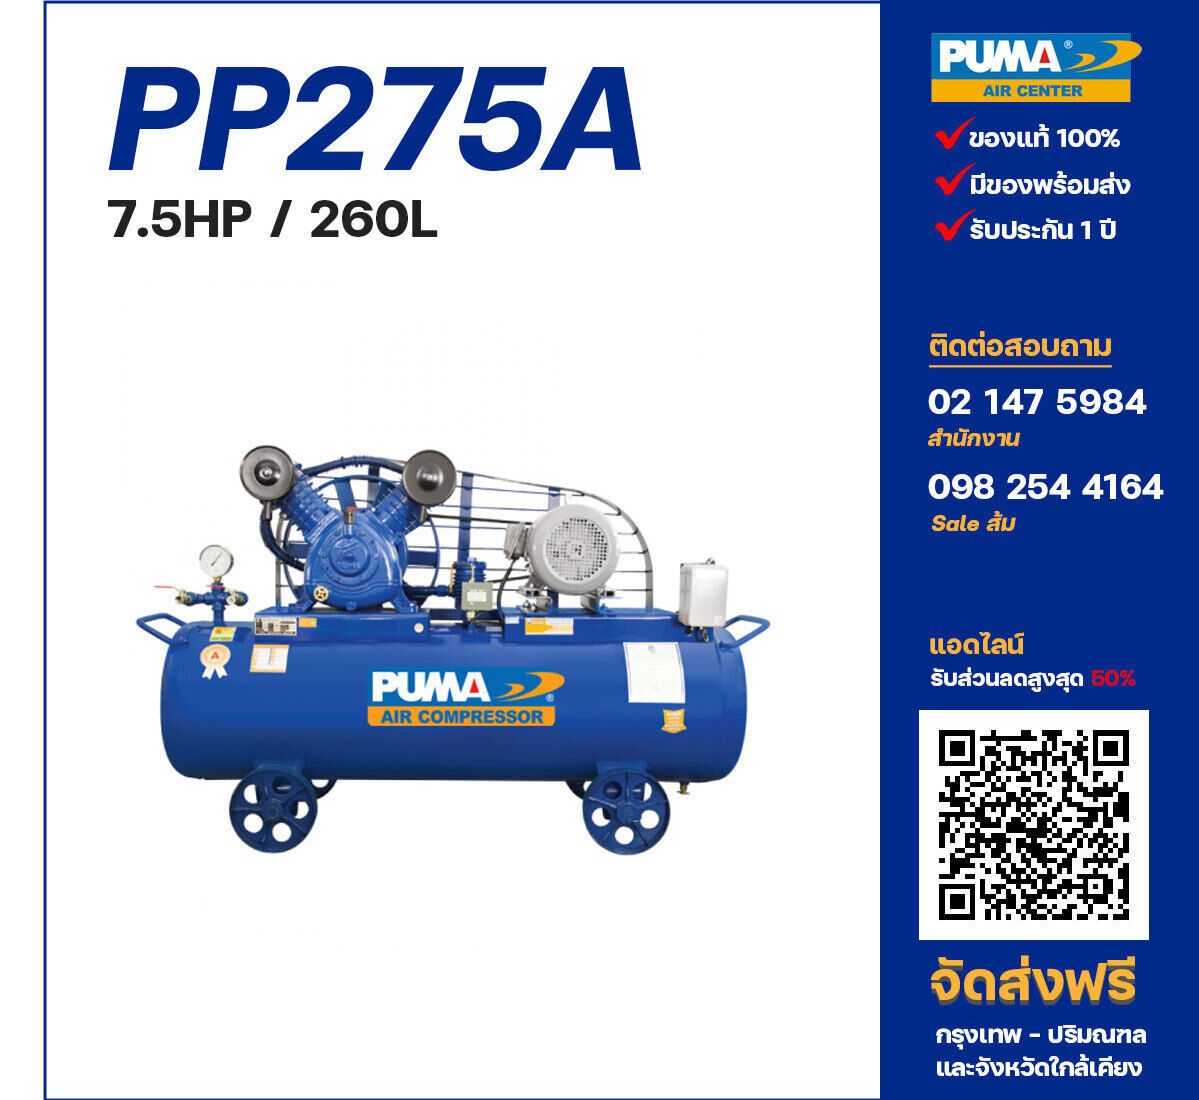 ปั๊มลมพูม่า PUMA PP275A-PPM380V ปั๊มลมลูกสูบ ขนาด 2 สูบ 7.5 แรงม้า 260 ลิตร PUMA พร้อมมอเตอร์ PUMA ไฟ 380V ส่งฟรี กรุงเทพฯ-ปริมณฑล รับประกัน 1 ปี